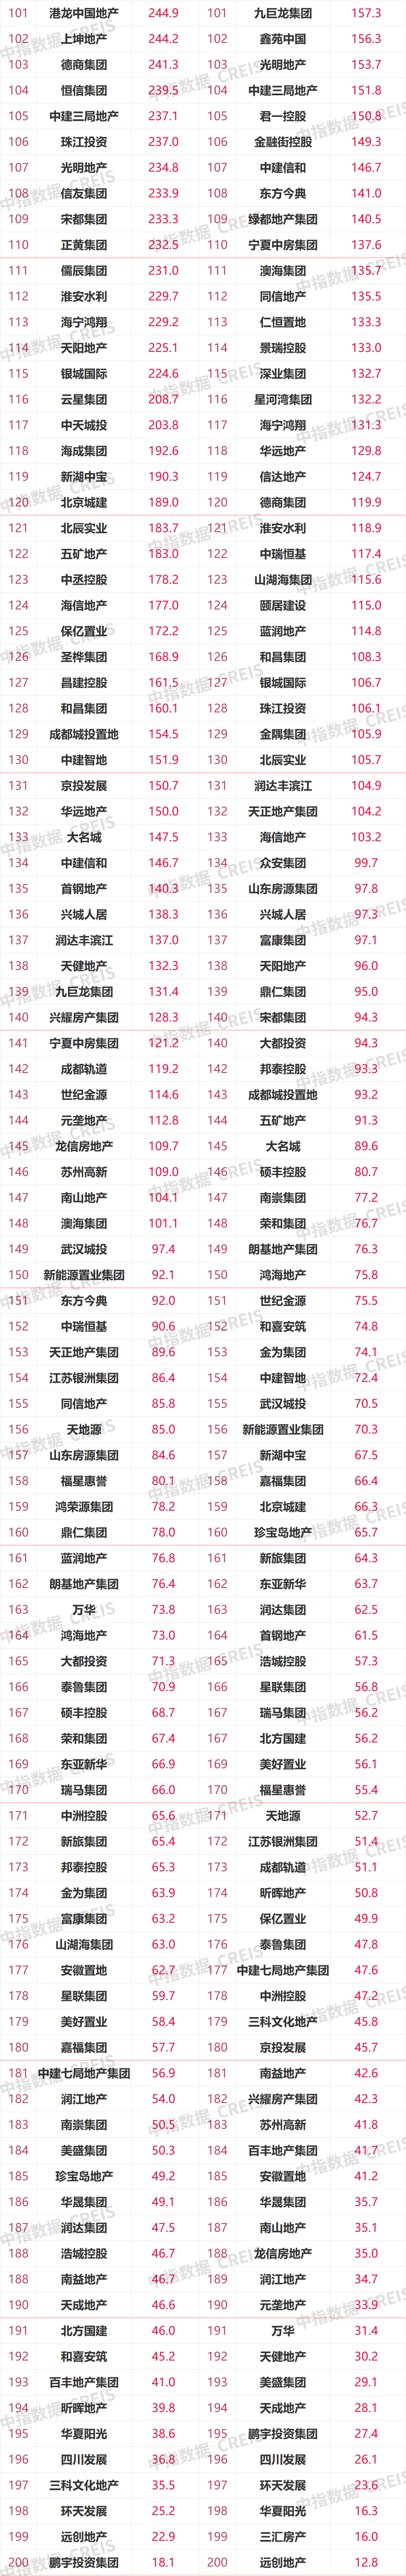 2021年1-10月中国房地产企业销售业绩TOP200：百强销售额均值同比增长16.3%